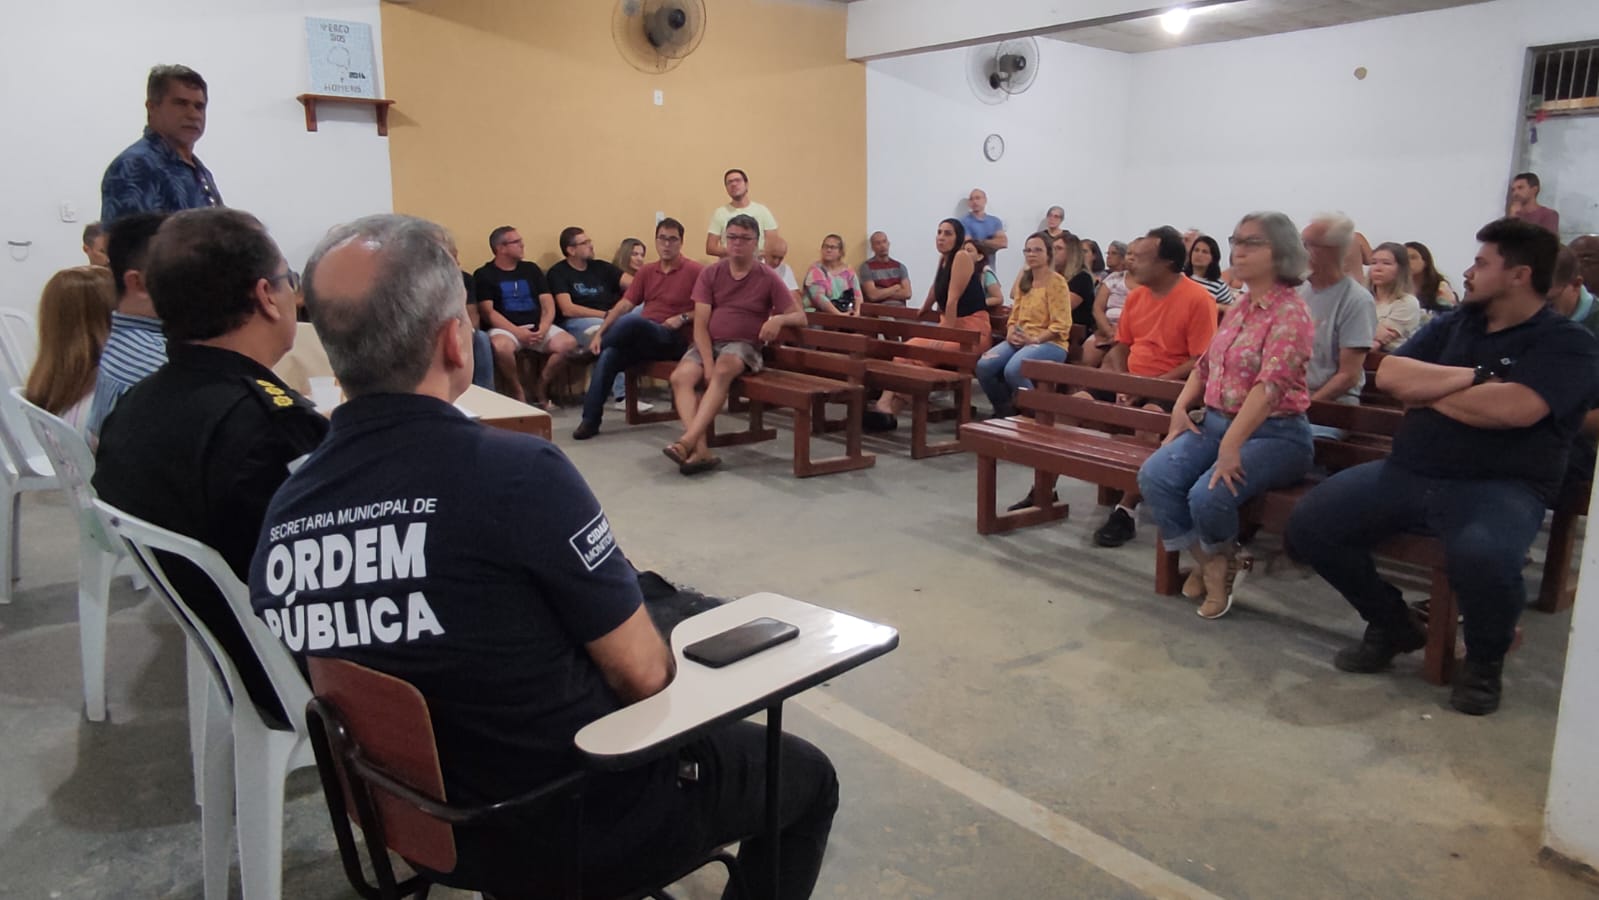 Ordem Pública e forças de segurança fazem reunião com moradores do Morada da Colina, em Volta Redonda